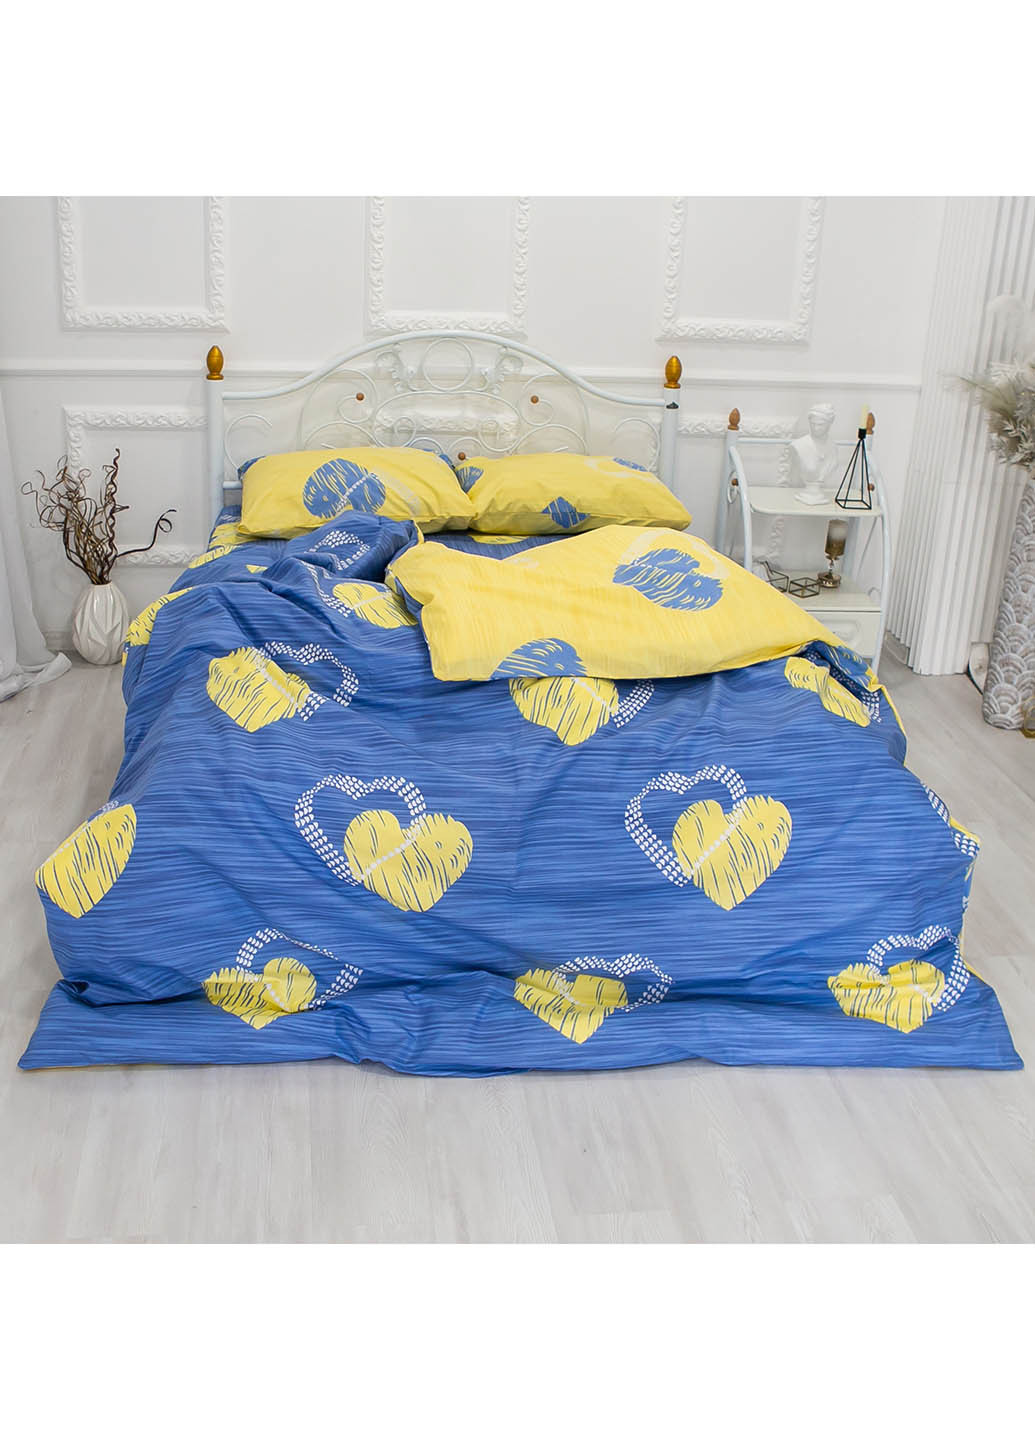 Комплект постельного белья Сердечки (синежелтые) (полуторный) Homedec - (260072746)